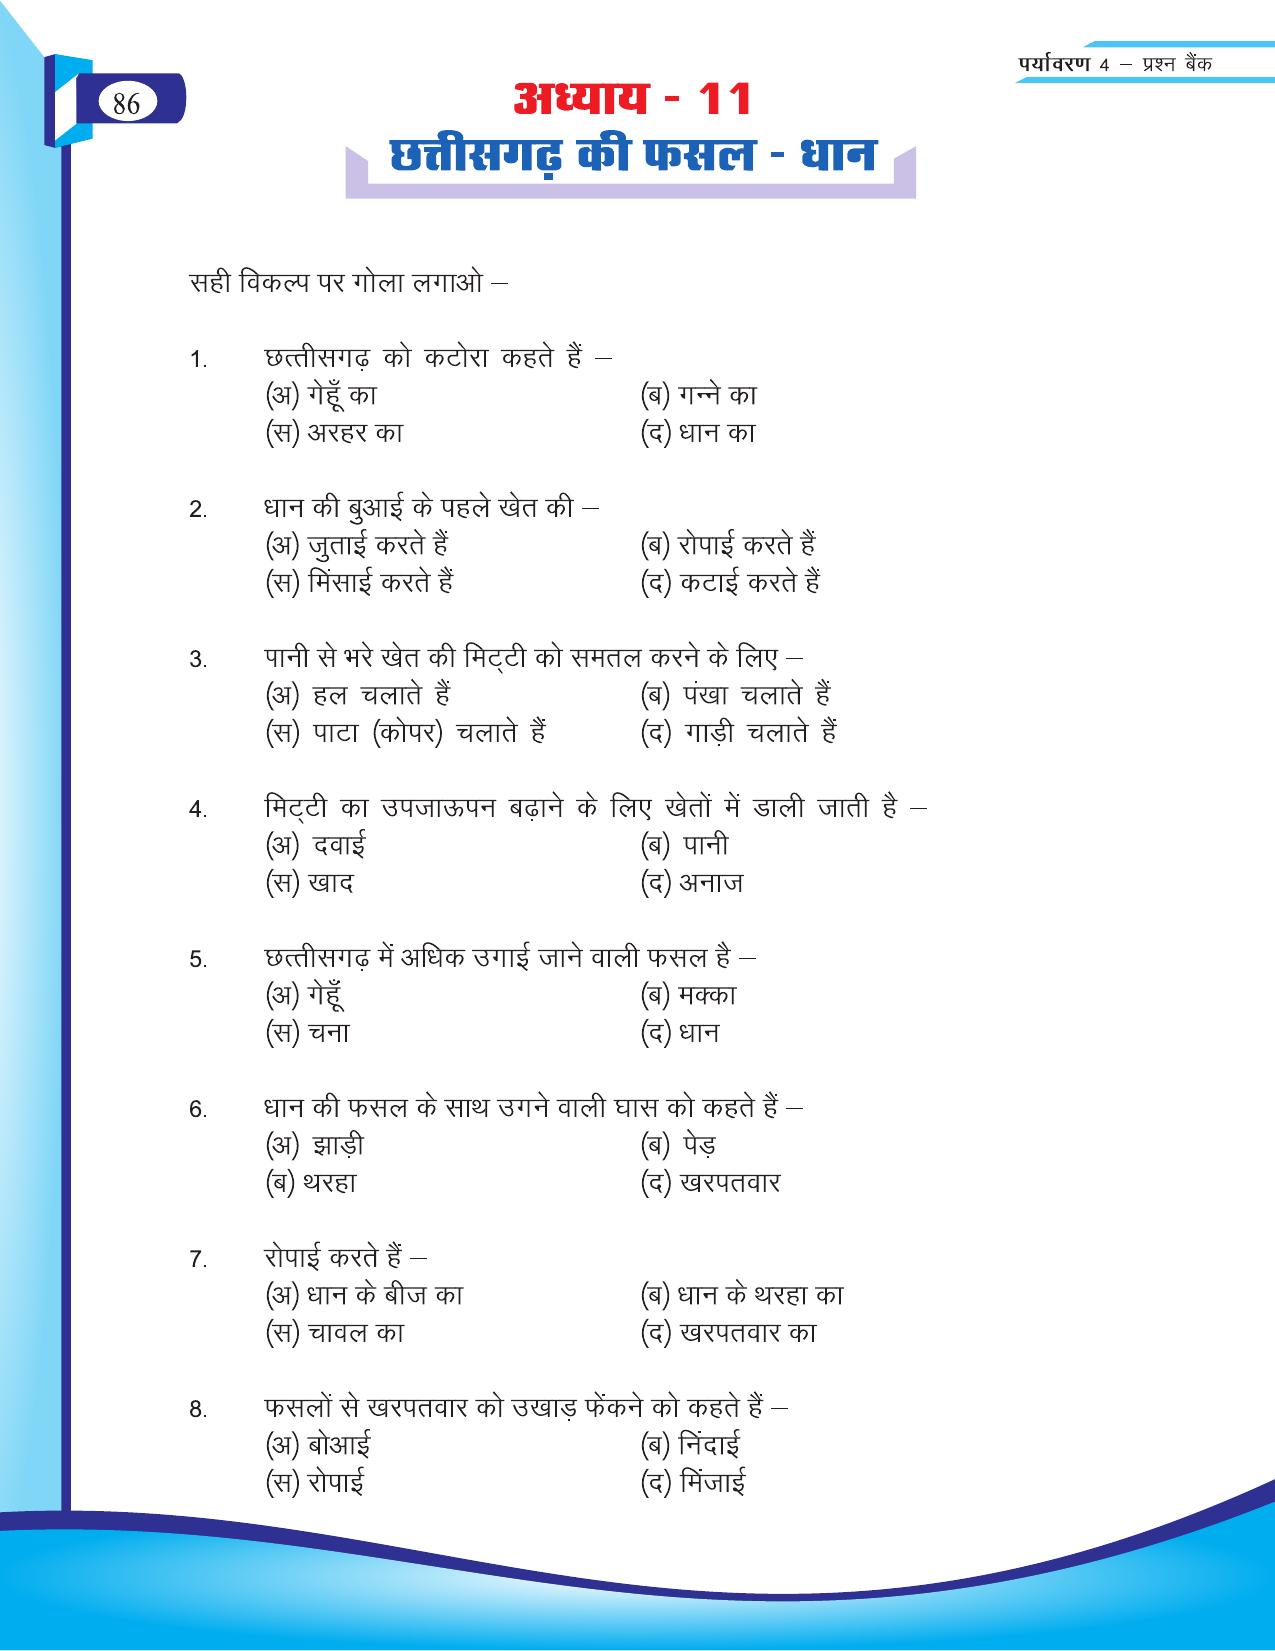 Chhattisgarh Board Class 4 EVS Question Bank 2015-16 - Page 15